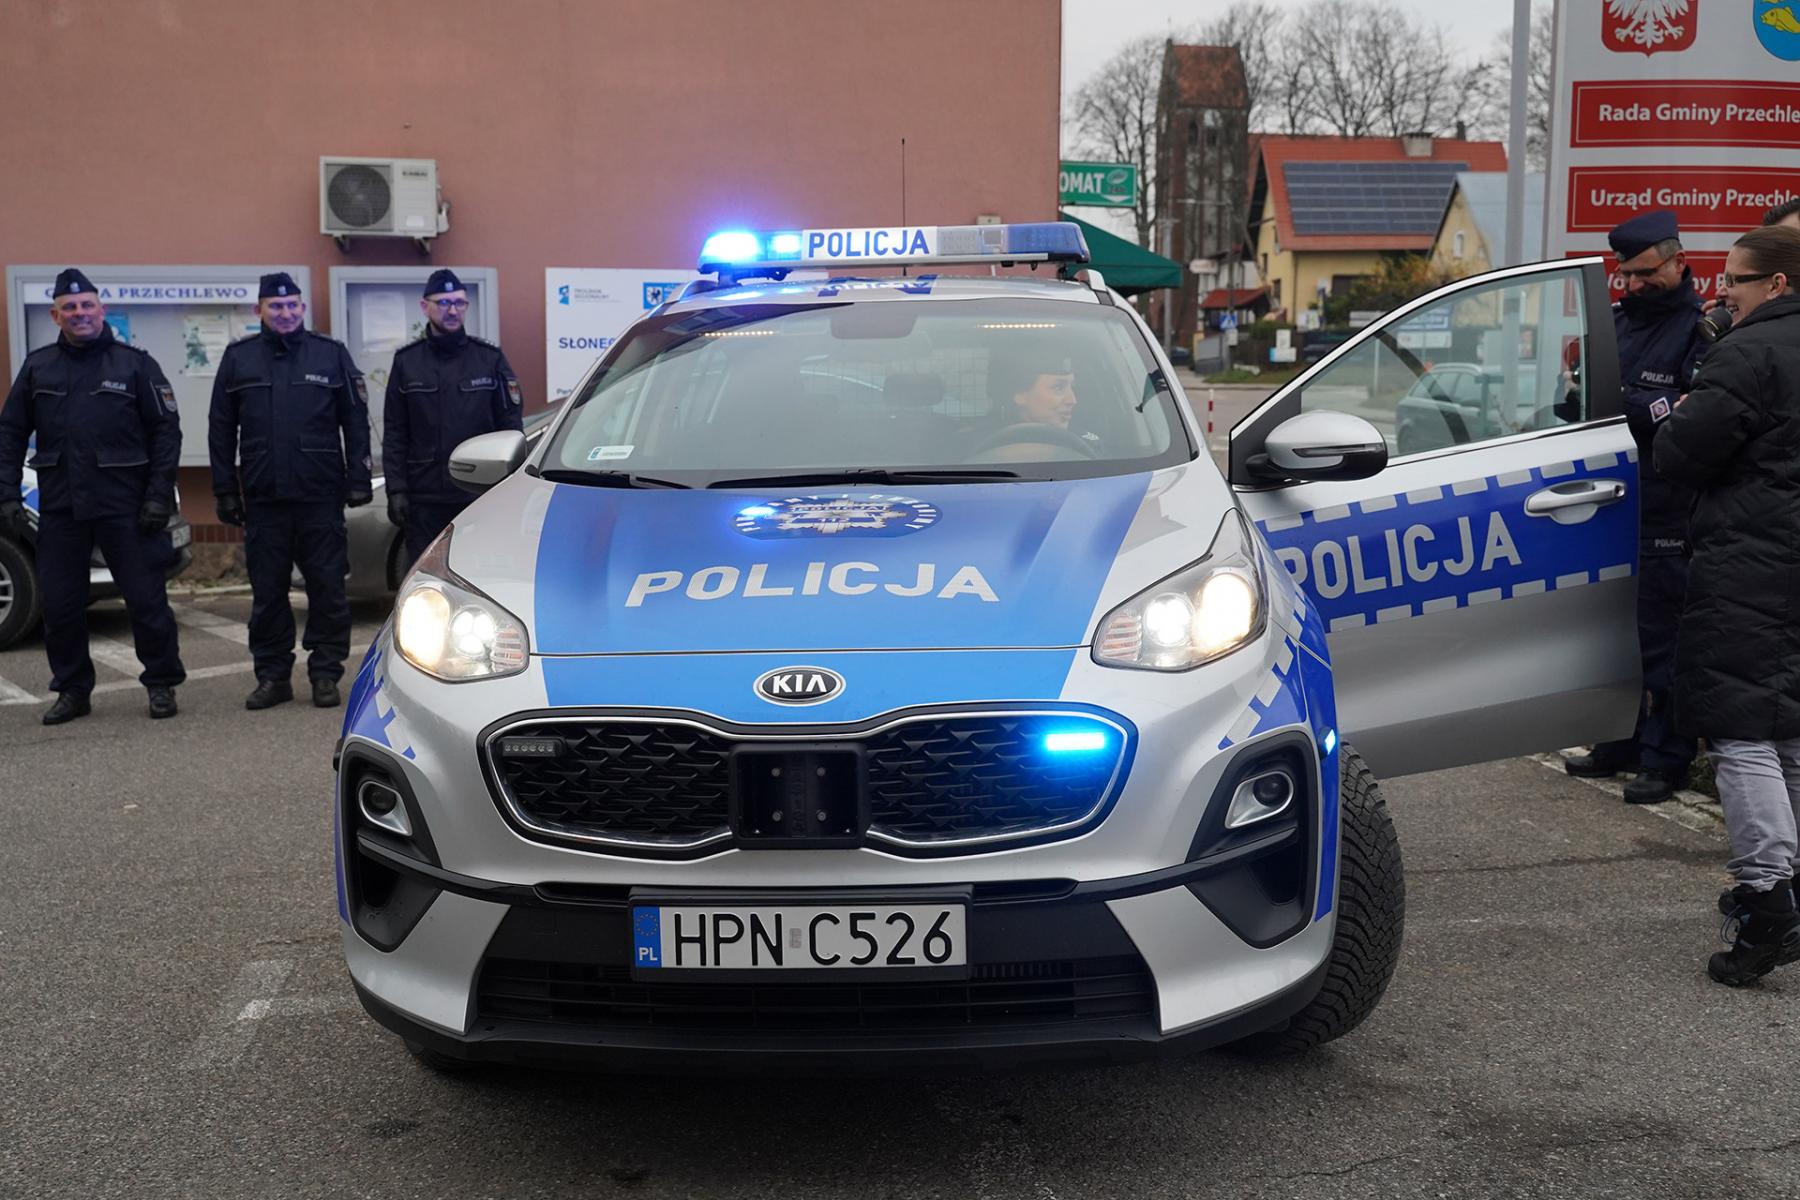 Nowy radiowóz dla przechlewskiej policji